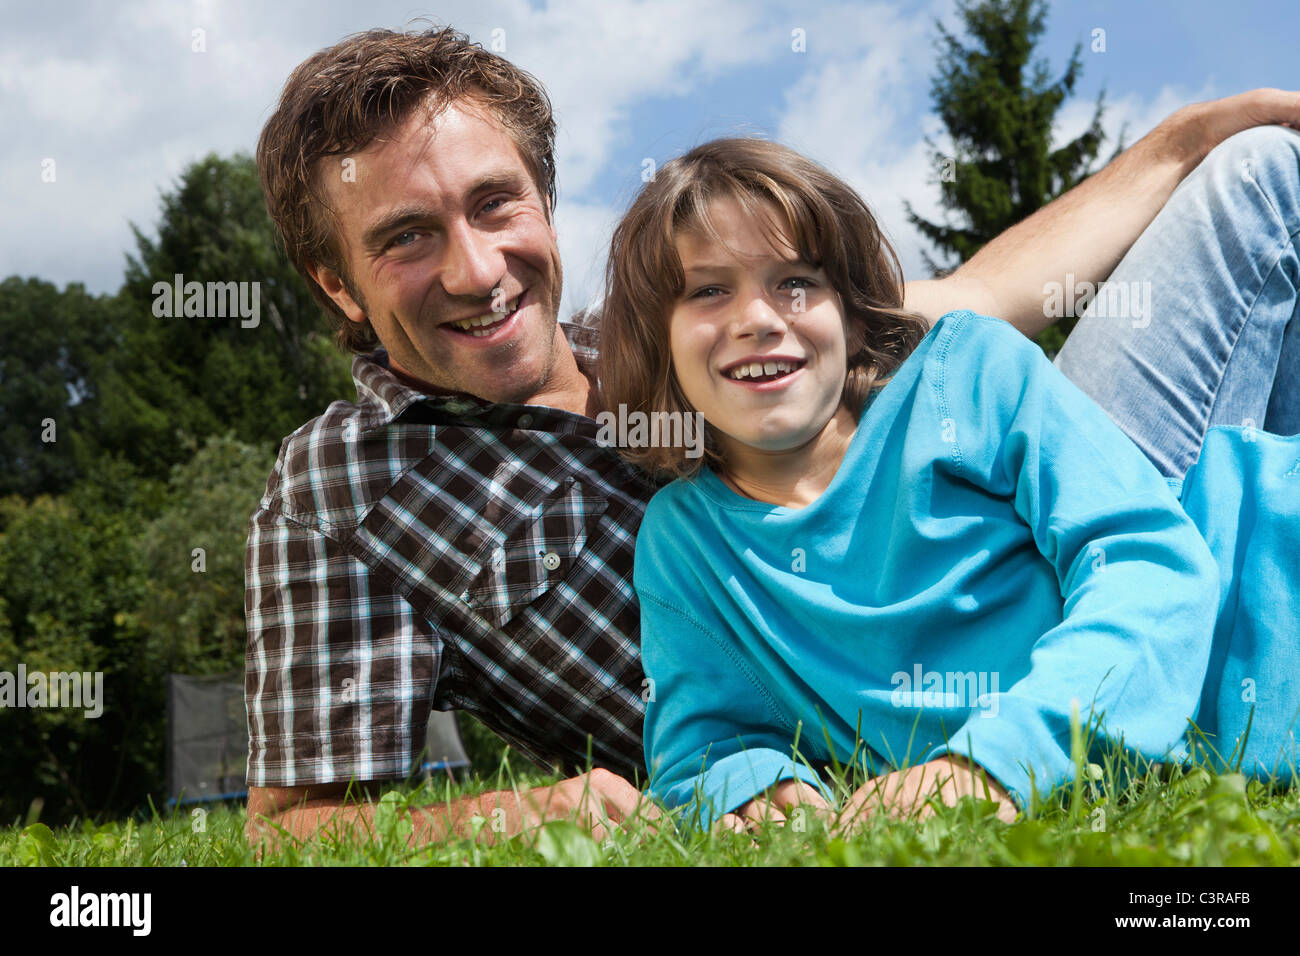 Alemania, Munich, padre e hijo (10-11 años) en el jardín, sonriente, Retrato Foto de stock